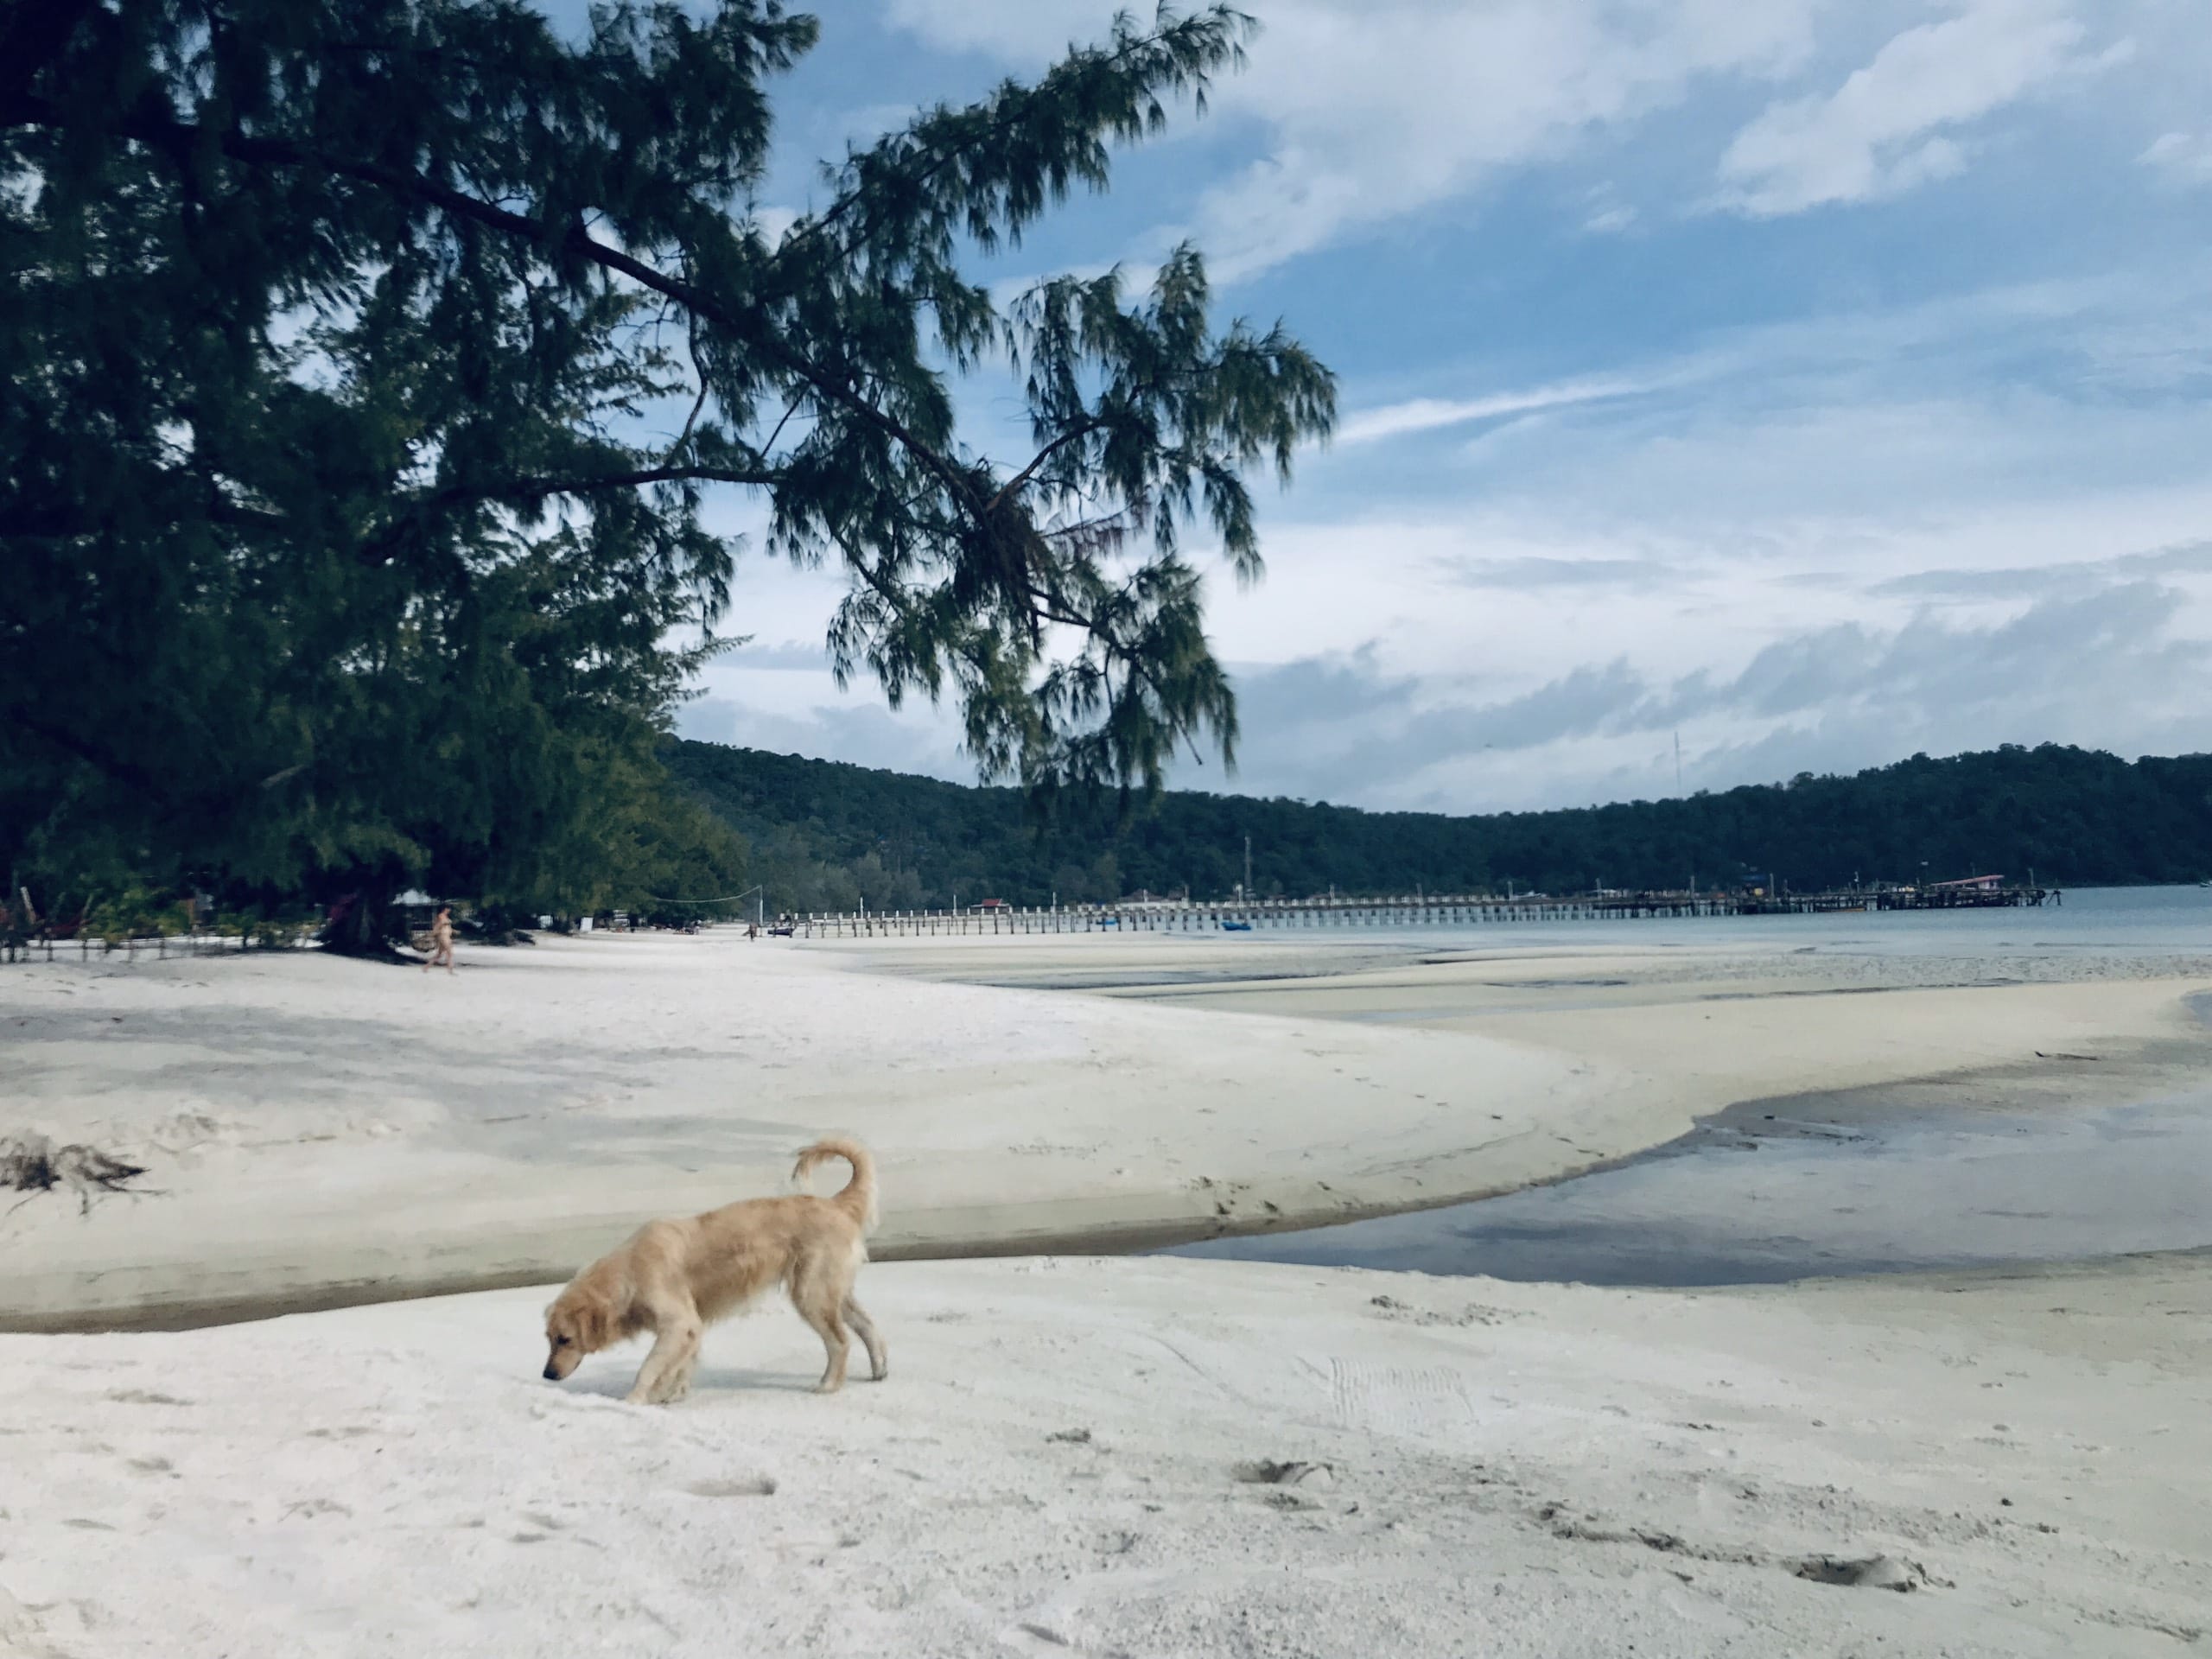 Koh Rong Samloem: Đảo hòn non bộc bạch và biển xanh trong của Koh Rong Samloem sẽ khiến bạn tan chảy trong sự thư giãn. Cùng xem hình ảnh để thấy sự trùng xuống thần tiên của đảo đẹp này.